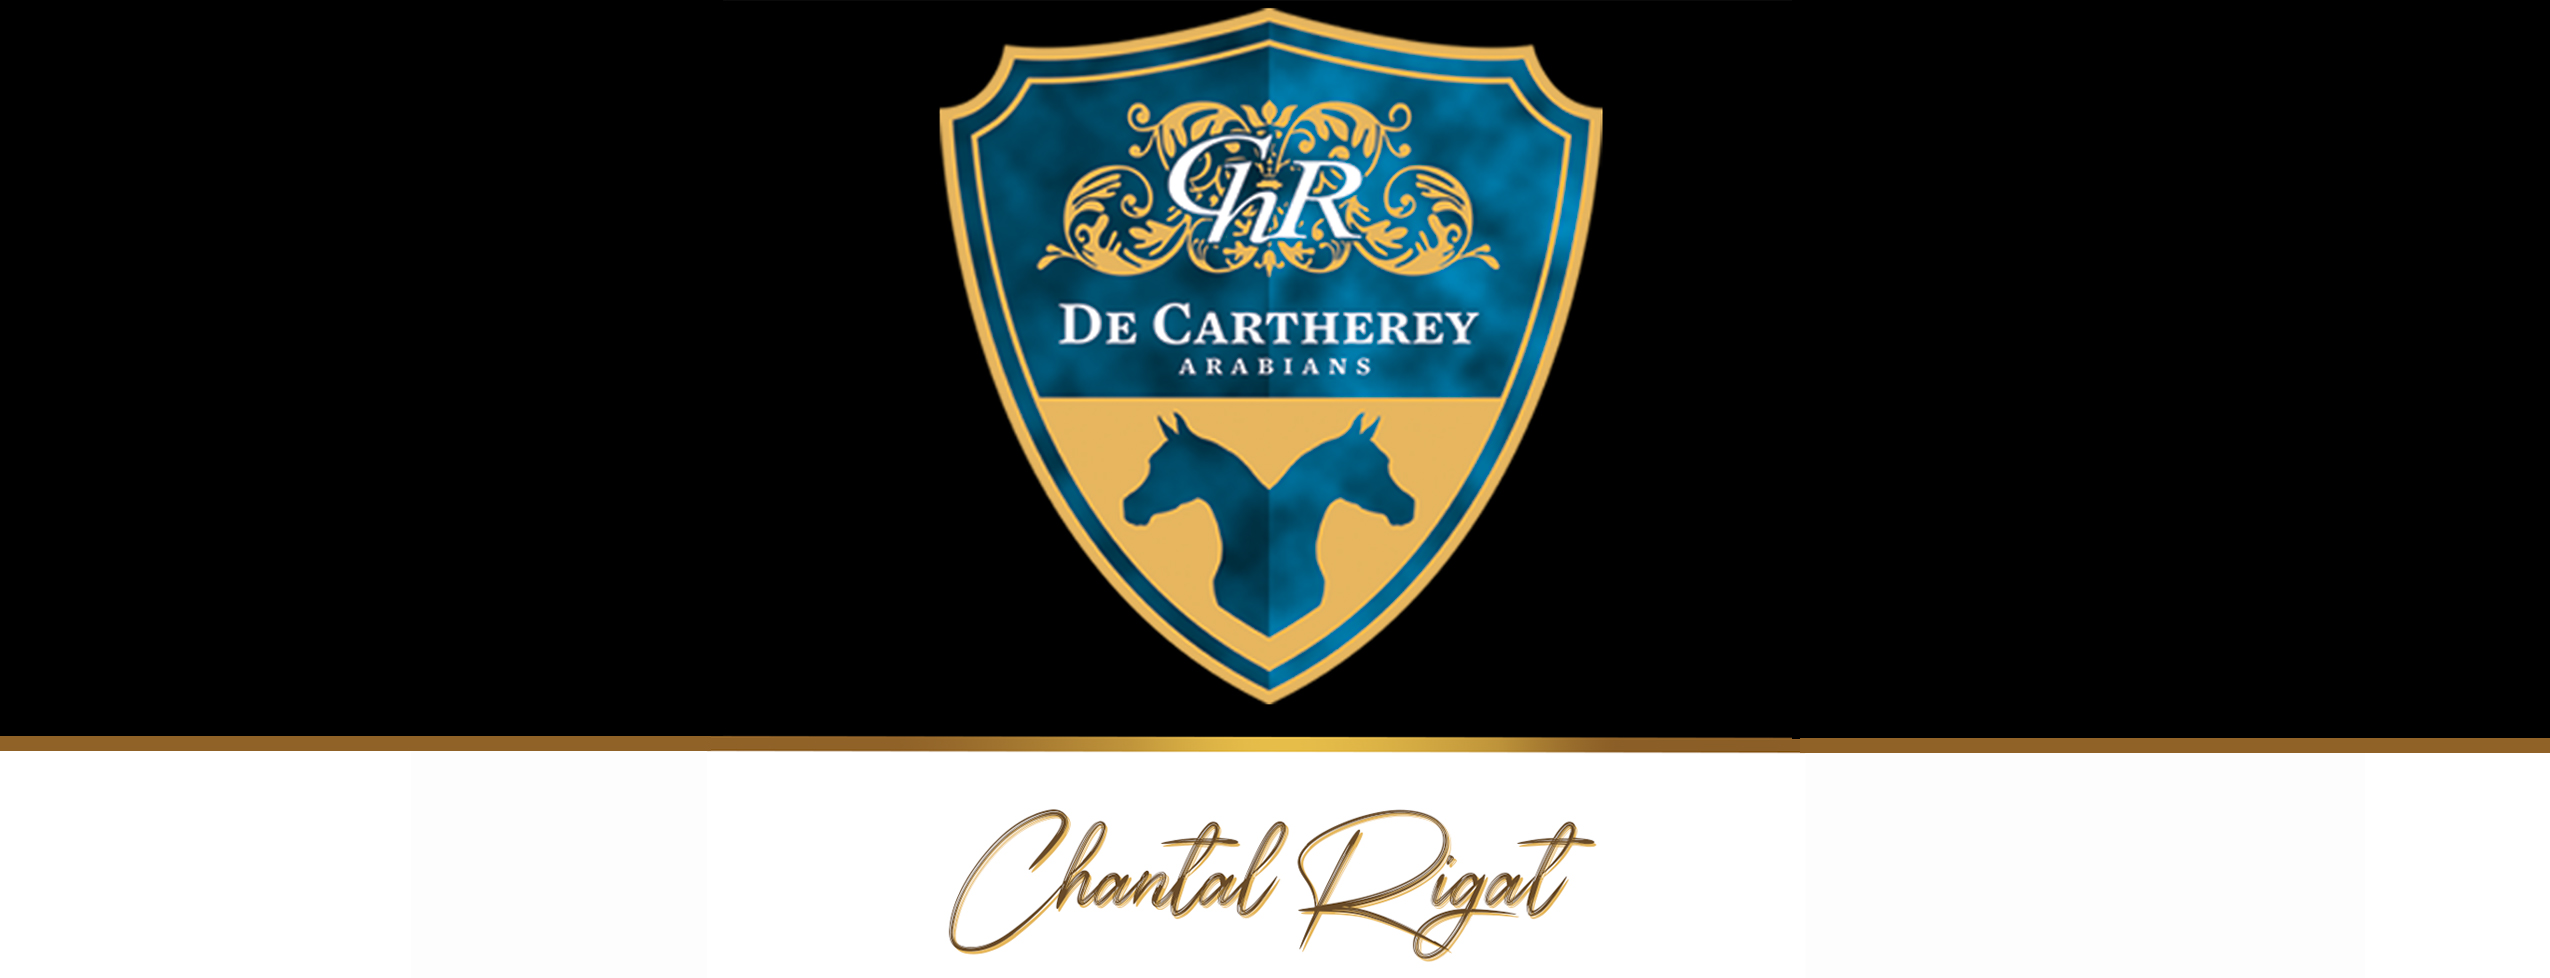 Chantal Rigat logo signature final